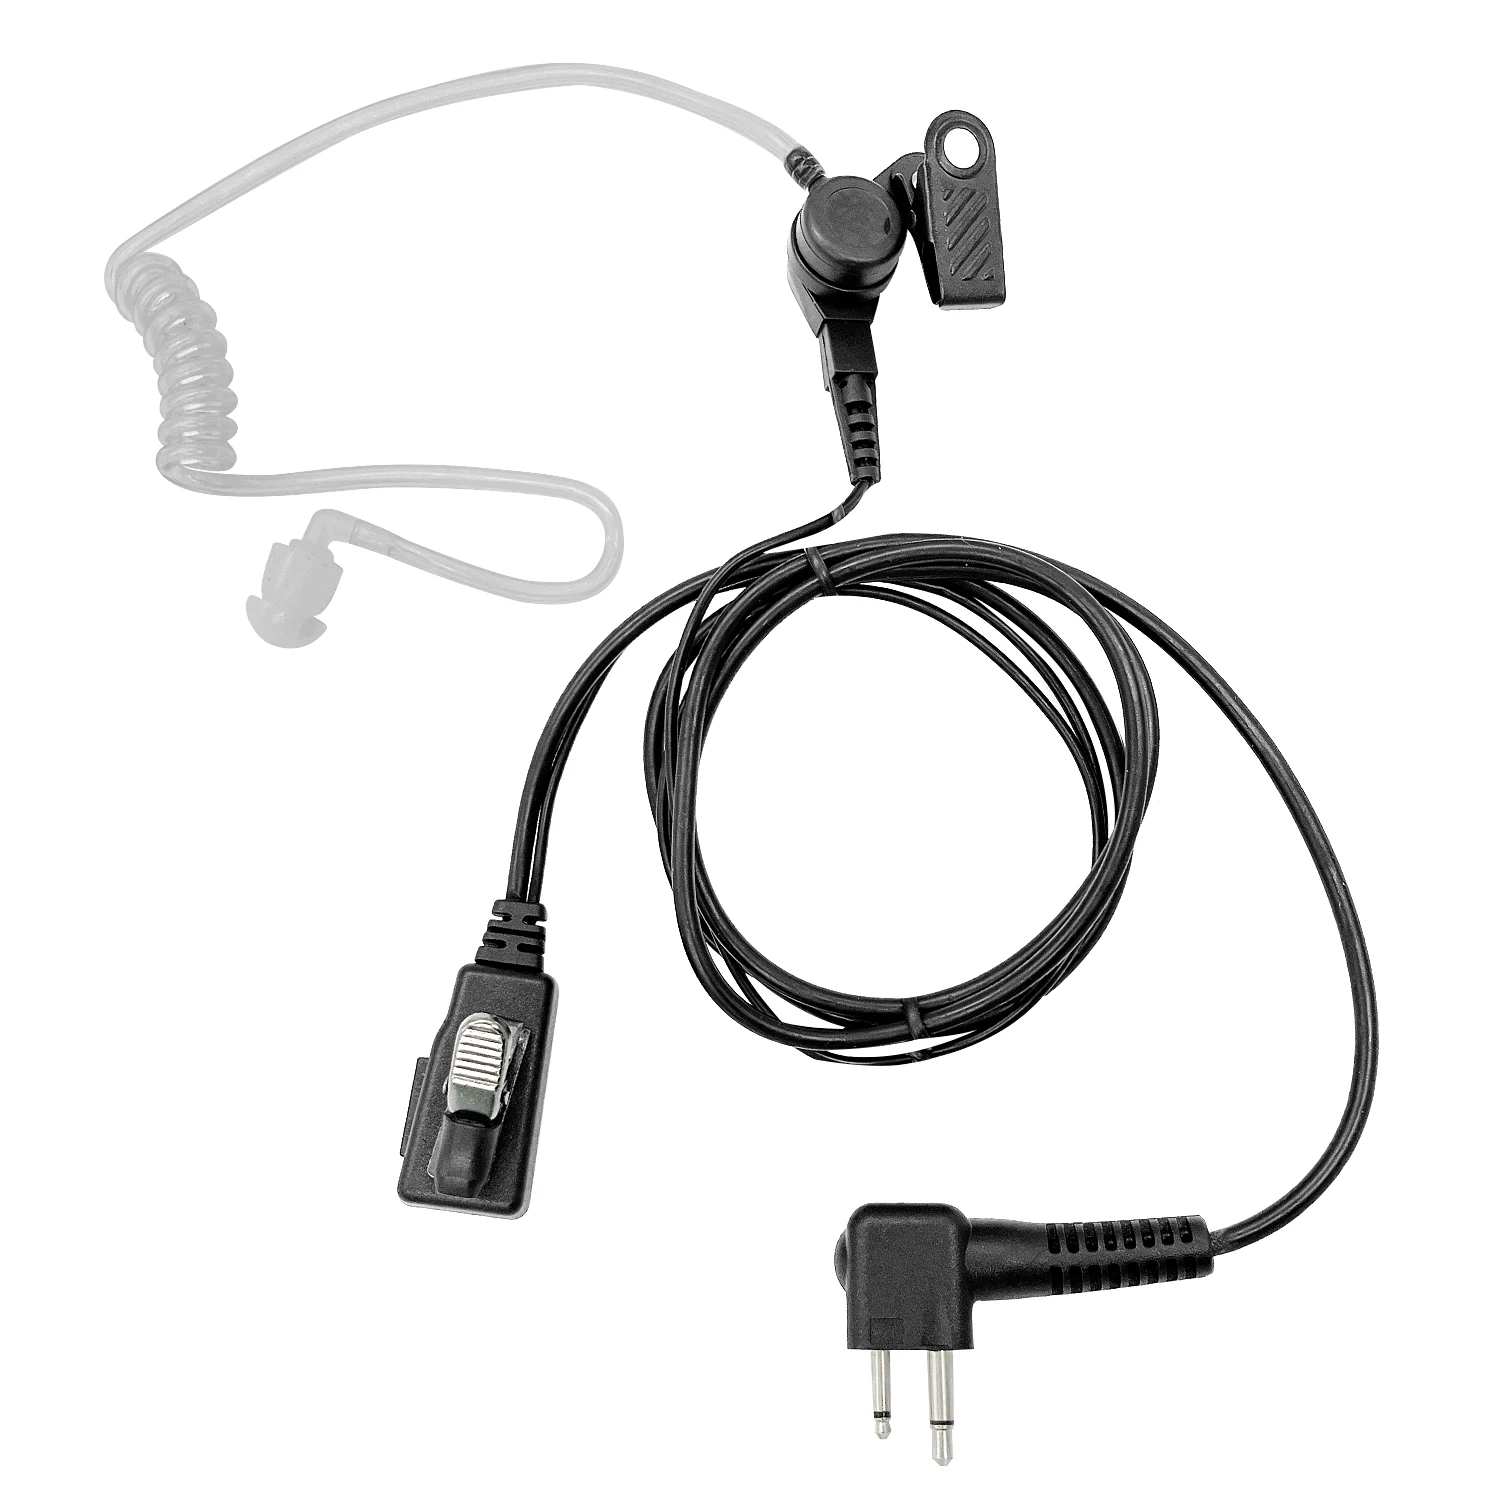 Earpiece walkie talkie radio earphone microphone headset Compatible with GP series: GP68, GP88, GP88S, GP300, GP308, GP350 enlarge